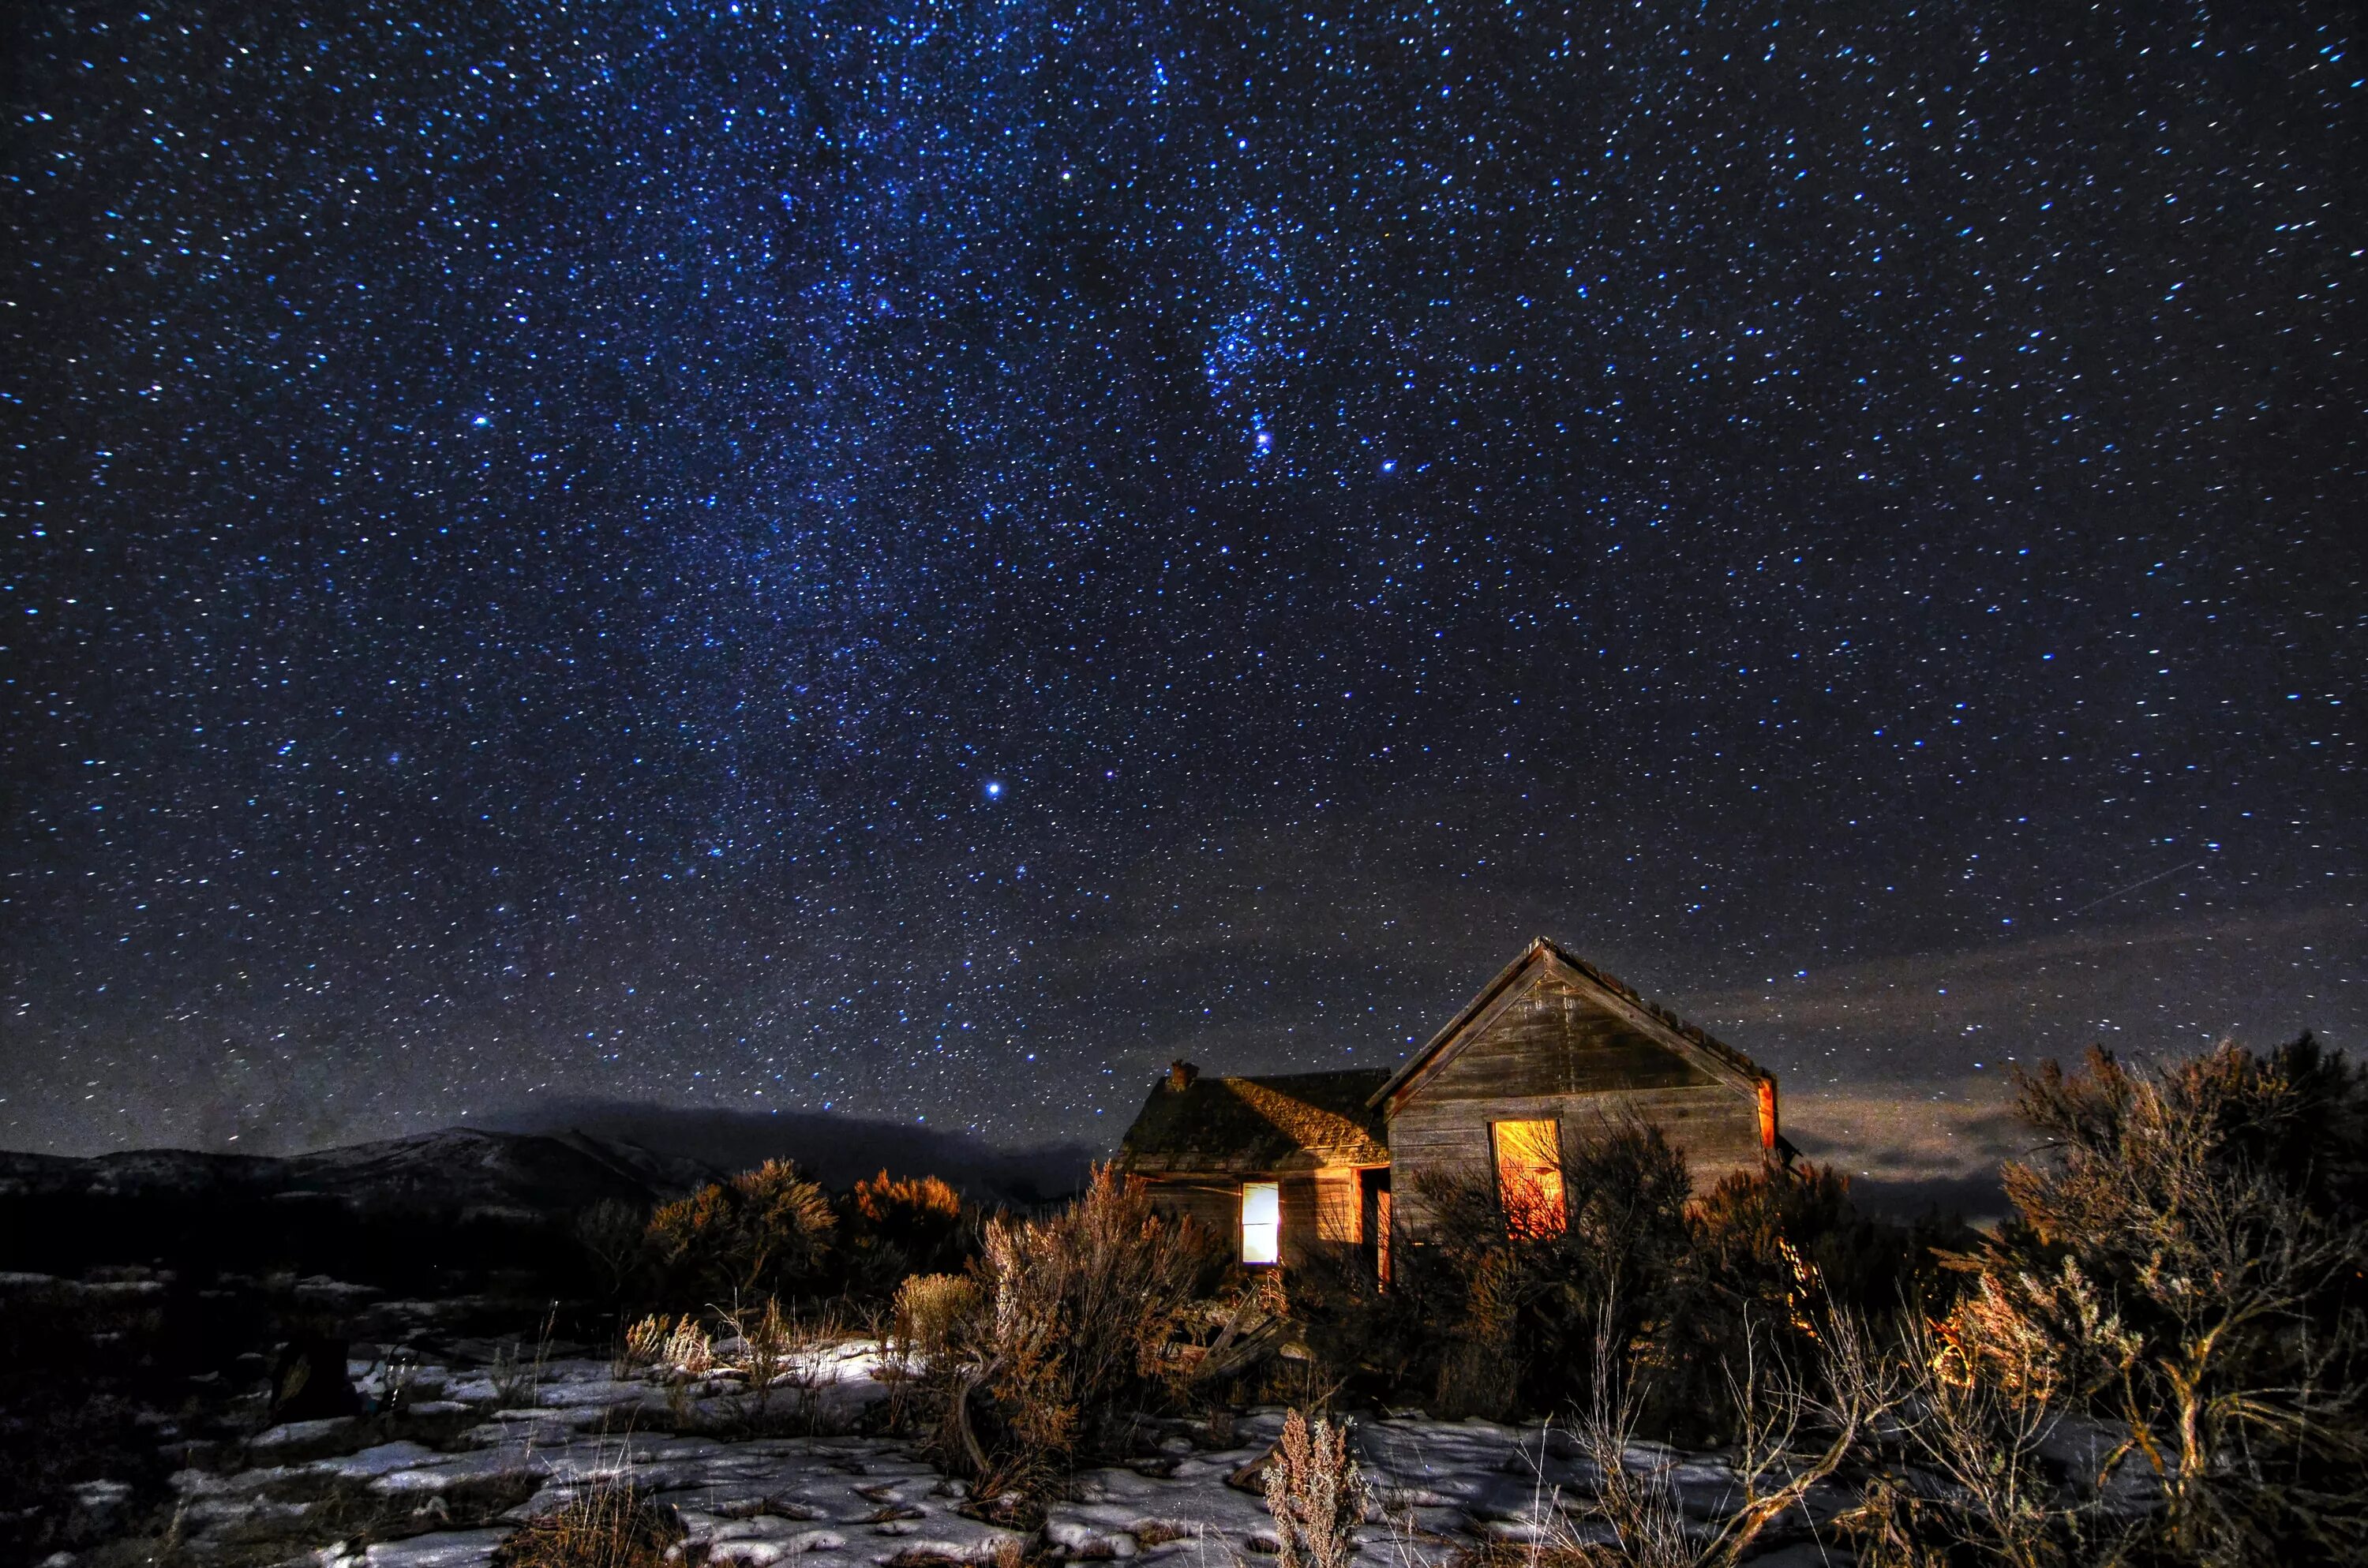 Луна над крышей дома. Ночное небо. Звездное небо. Ночной пейзаж. Вечернее небо со звездами.